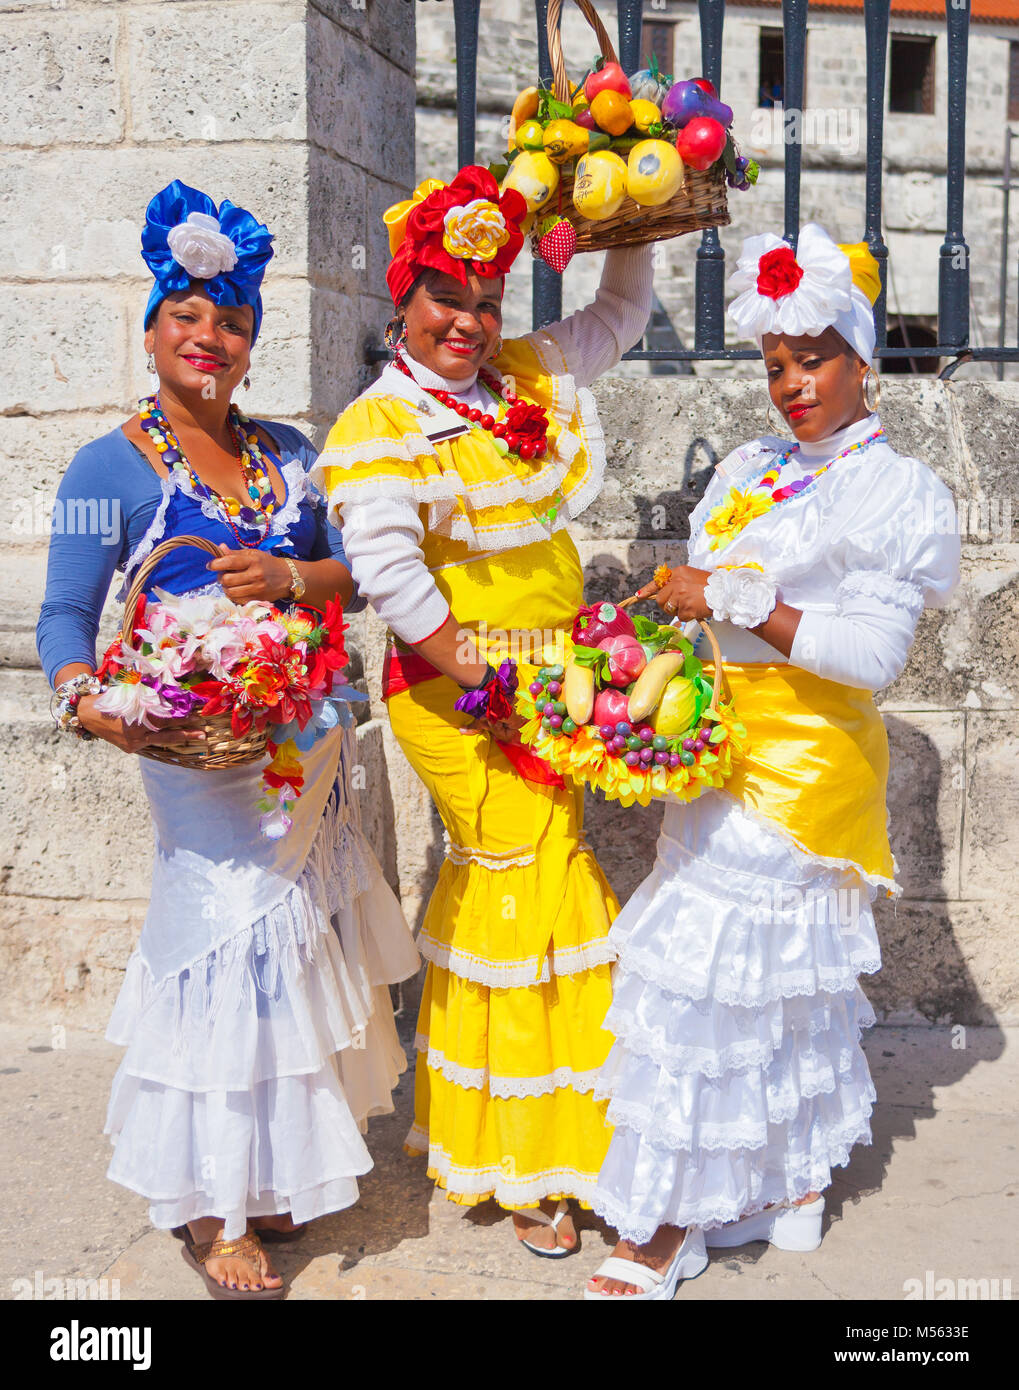 Frauen in traditionellen kubanischen Kleidung Stockfotografie - Alamy